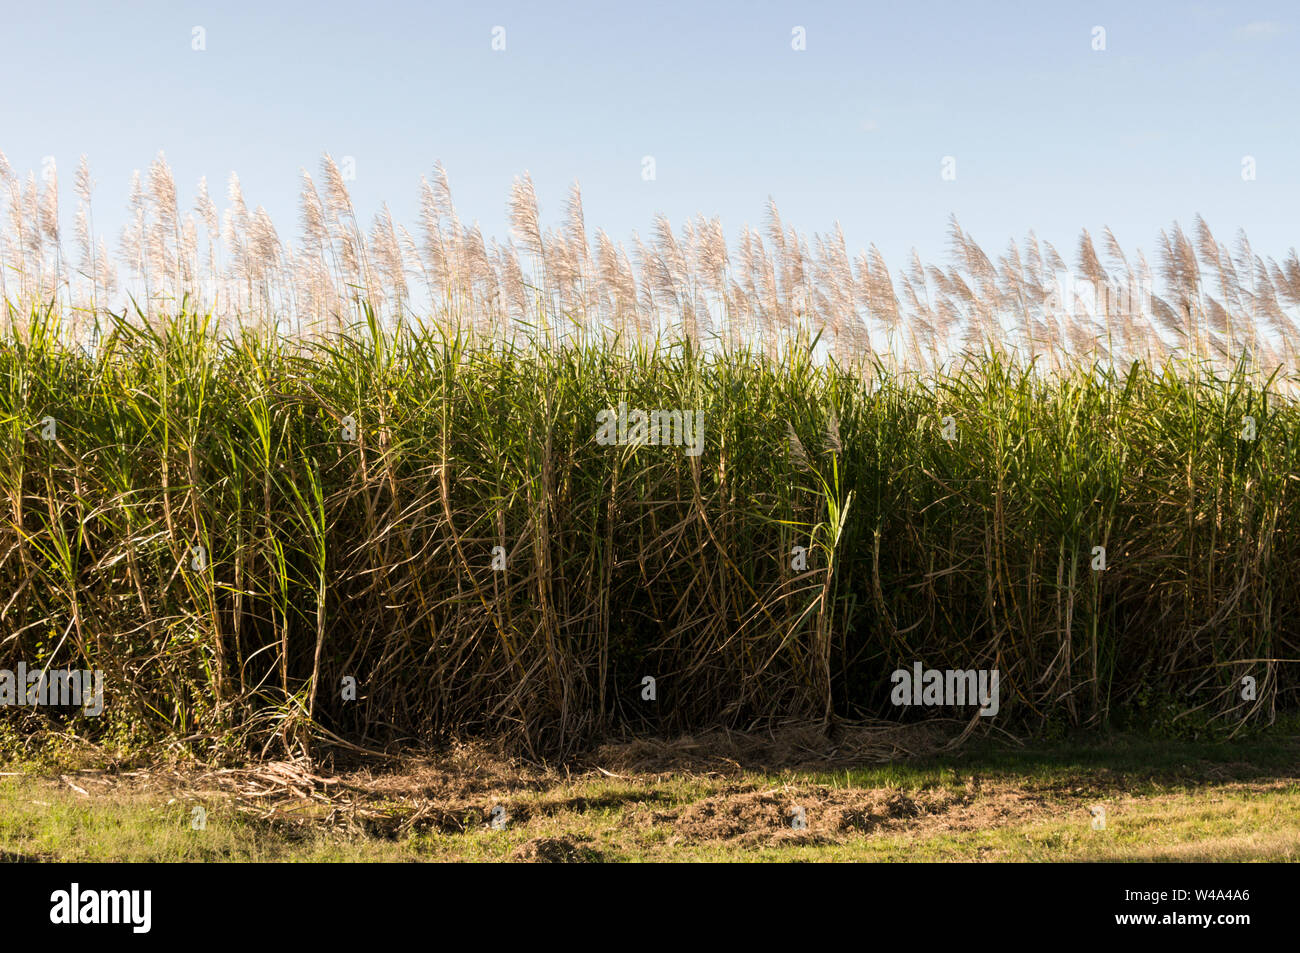 Les champs de canne à sucre dans la région de Mackay de Queensland en Australie. Mackay est le plus grand producteur de sucre dans le Queensland et le deuxième plus grand producteur de sucre Banque D'Images